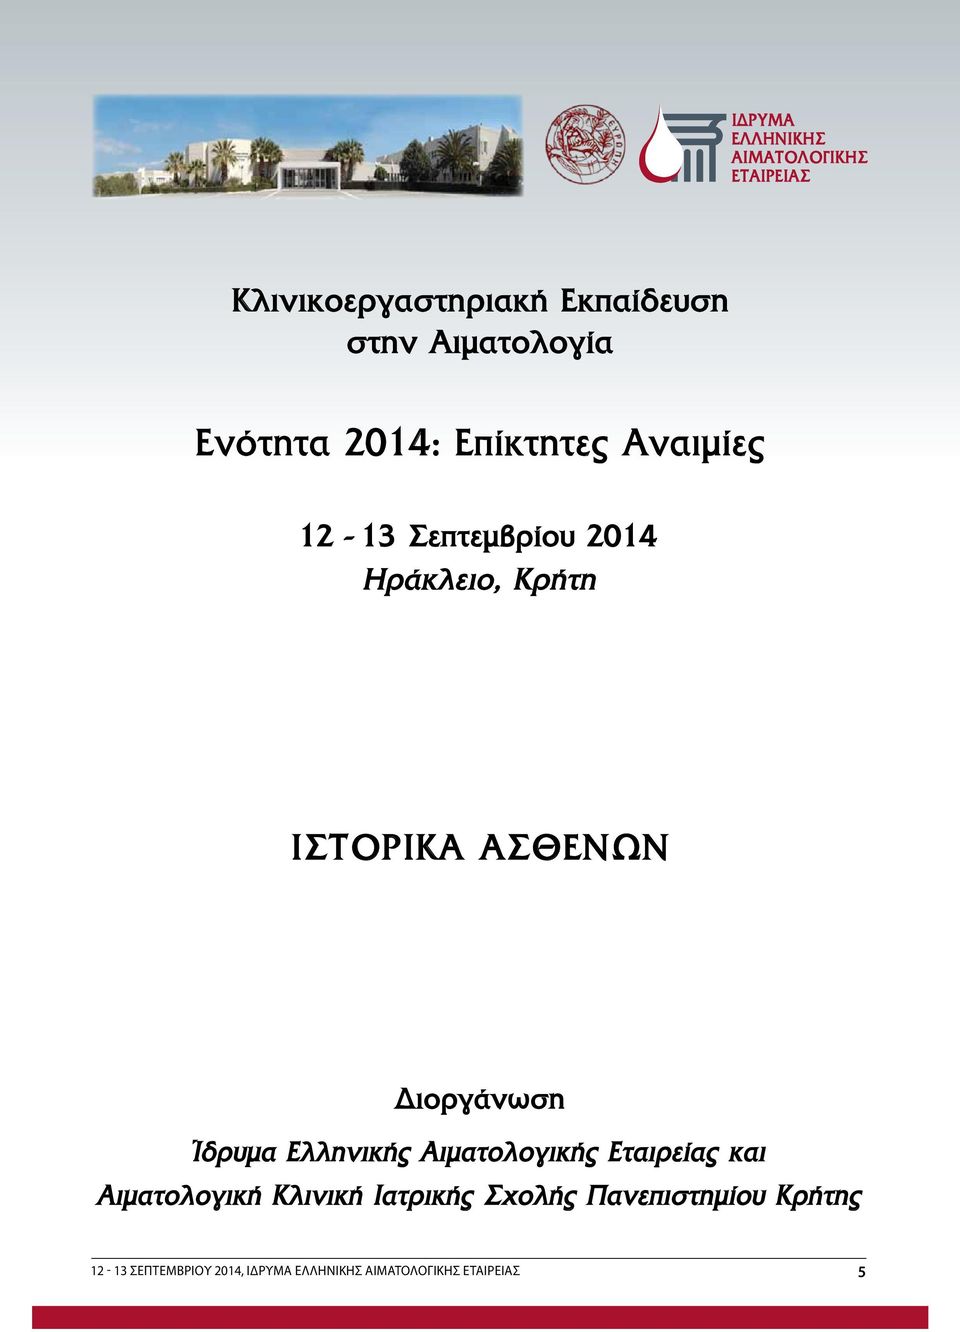 Ίδρυμα Ελληνικής Αιματολογικής Εταιρείας και Αιματολογική Κλινική Ιατρικής